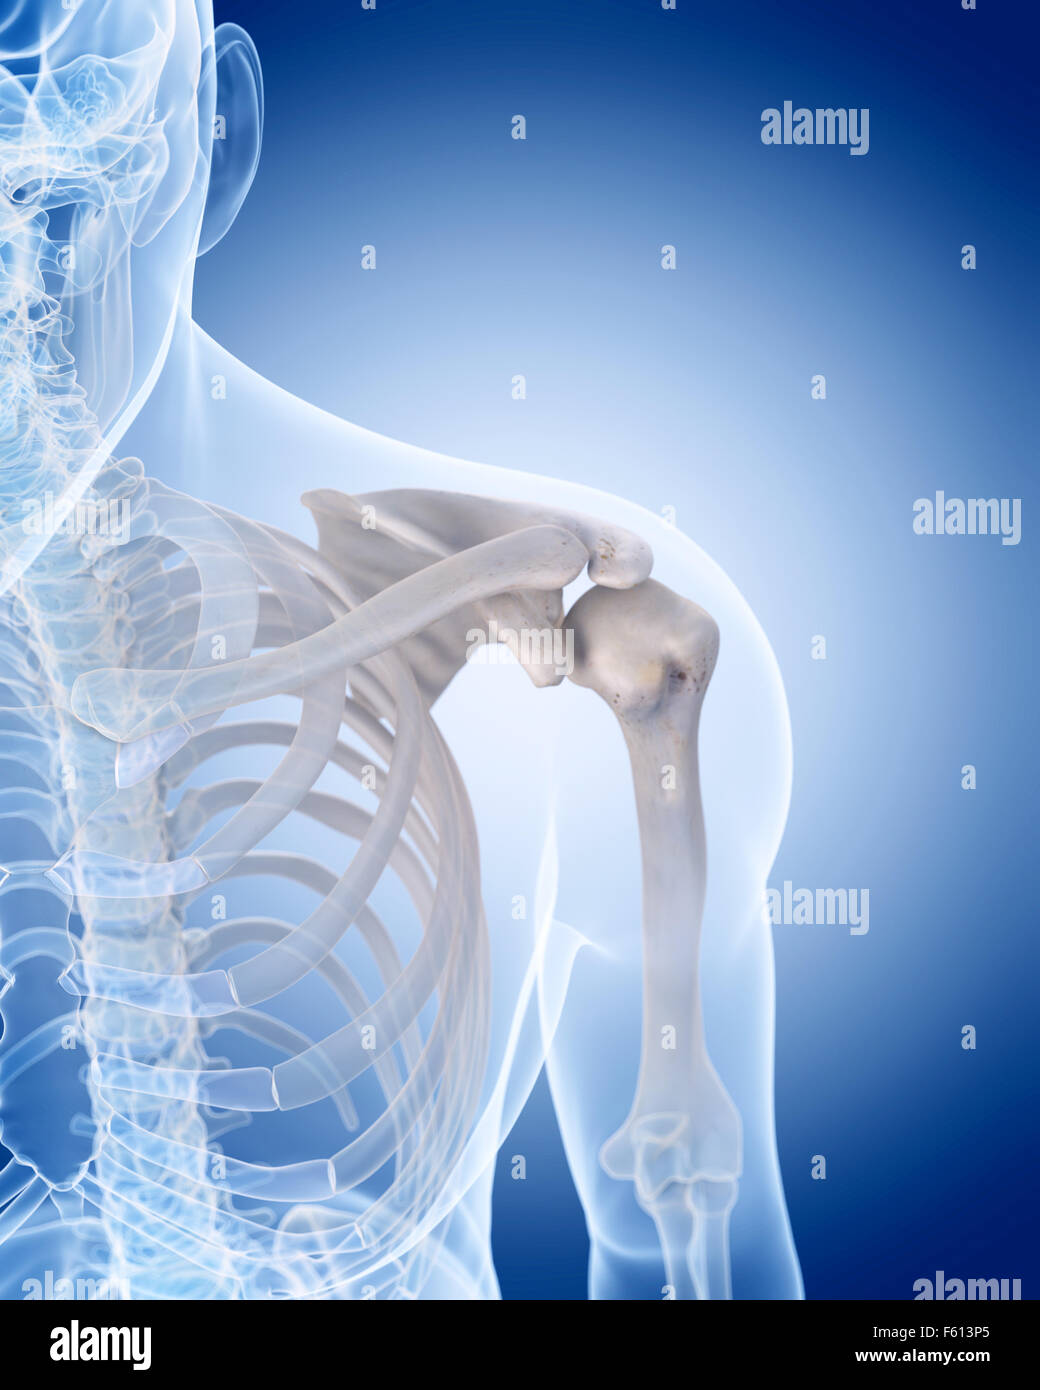 medizinisch genaue Abbildung des menschlichen Skeletts - Schulter Stockfoto